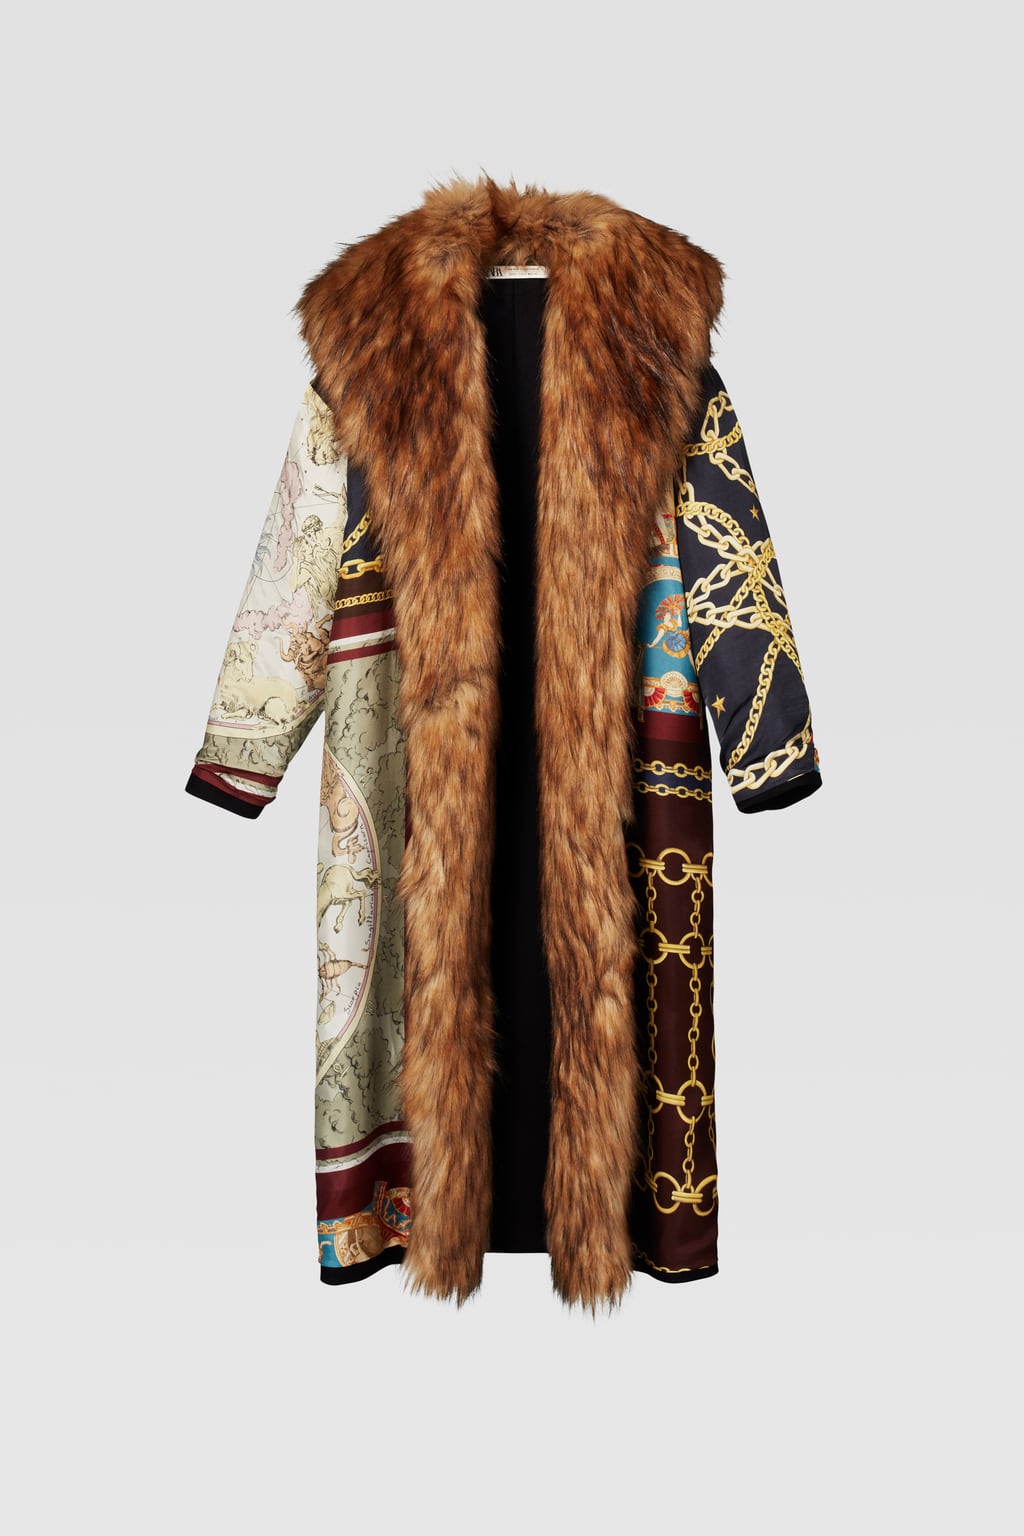 Estas prendas de la nueva colección otoño-invierno de Zara que debes comprar